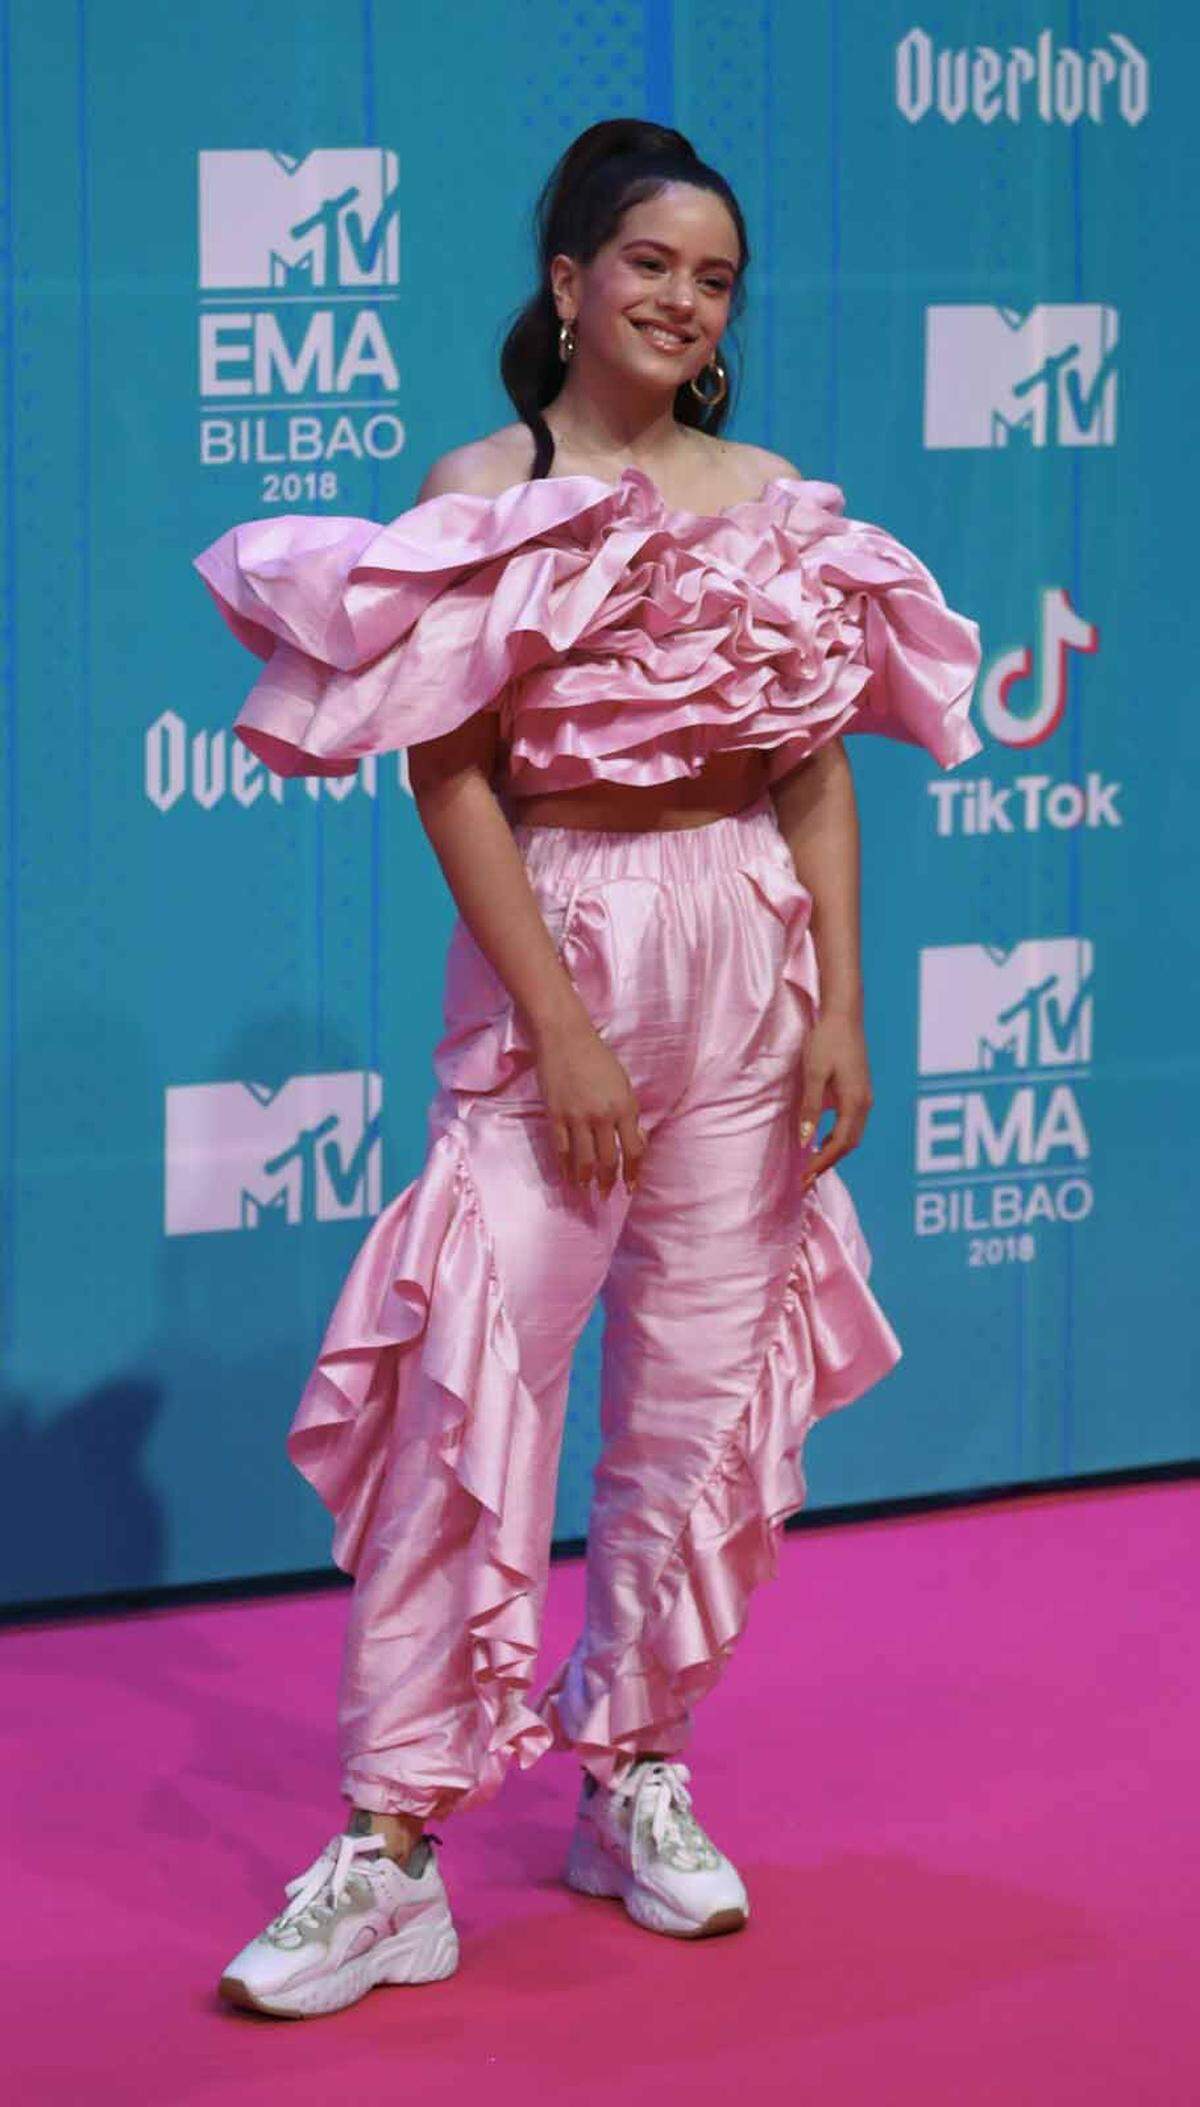 Das Spektakel wurde weltweit in eine halbe Milliarde Haushalte übertragen. Nach 2002 (Barcelona) und 2010 (Madrid) wurden die MTV Europe Music Awards zum dritten Mal in Spanien vergeben. Im Bild: Die spanische Sängerin Rosalia pretty in Pink.